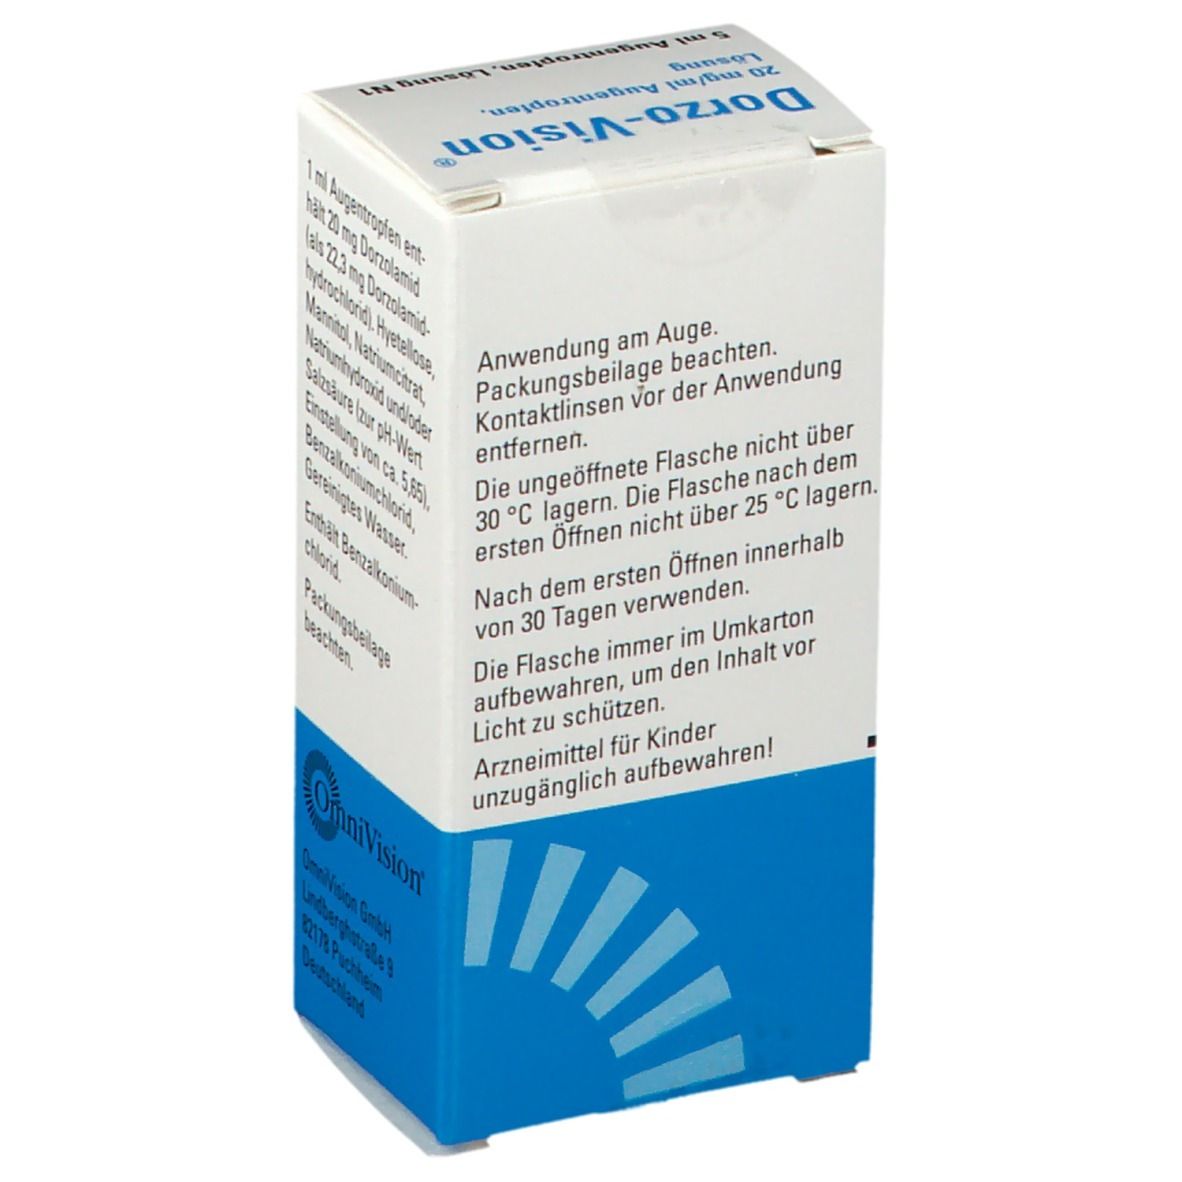 Dorzo-Vision® 20 mg/ml